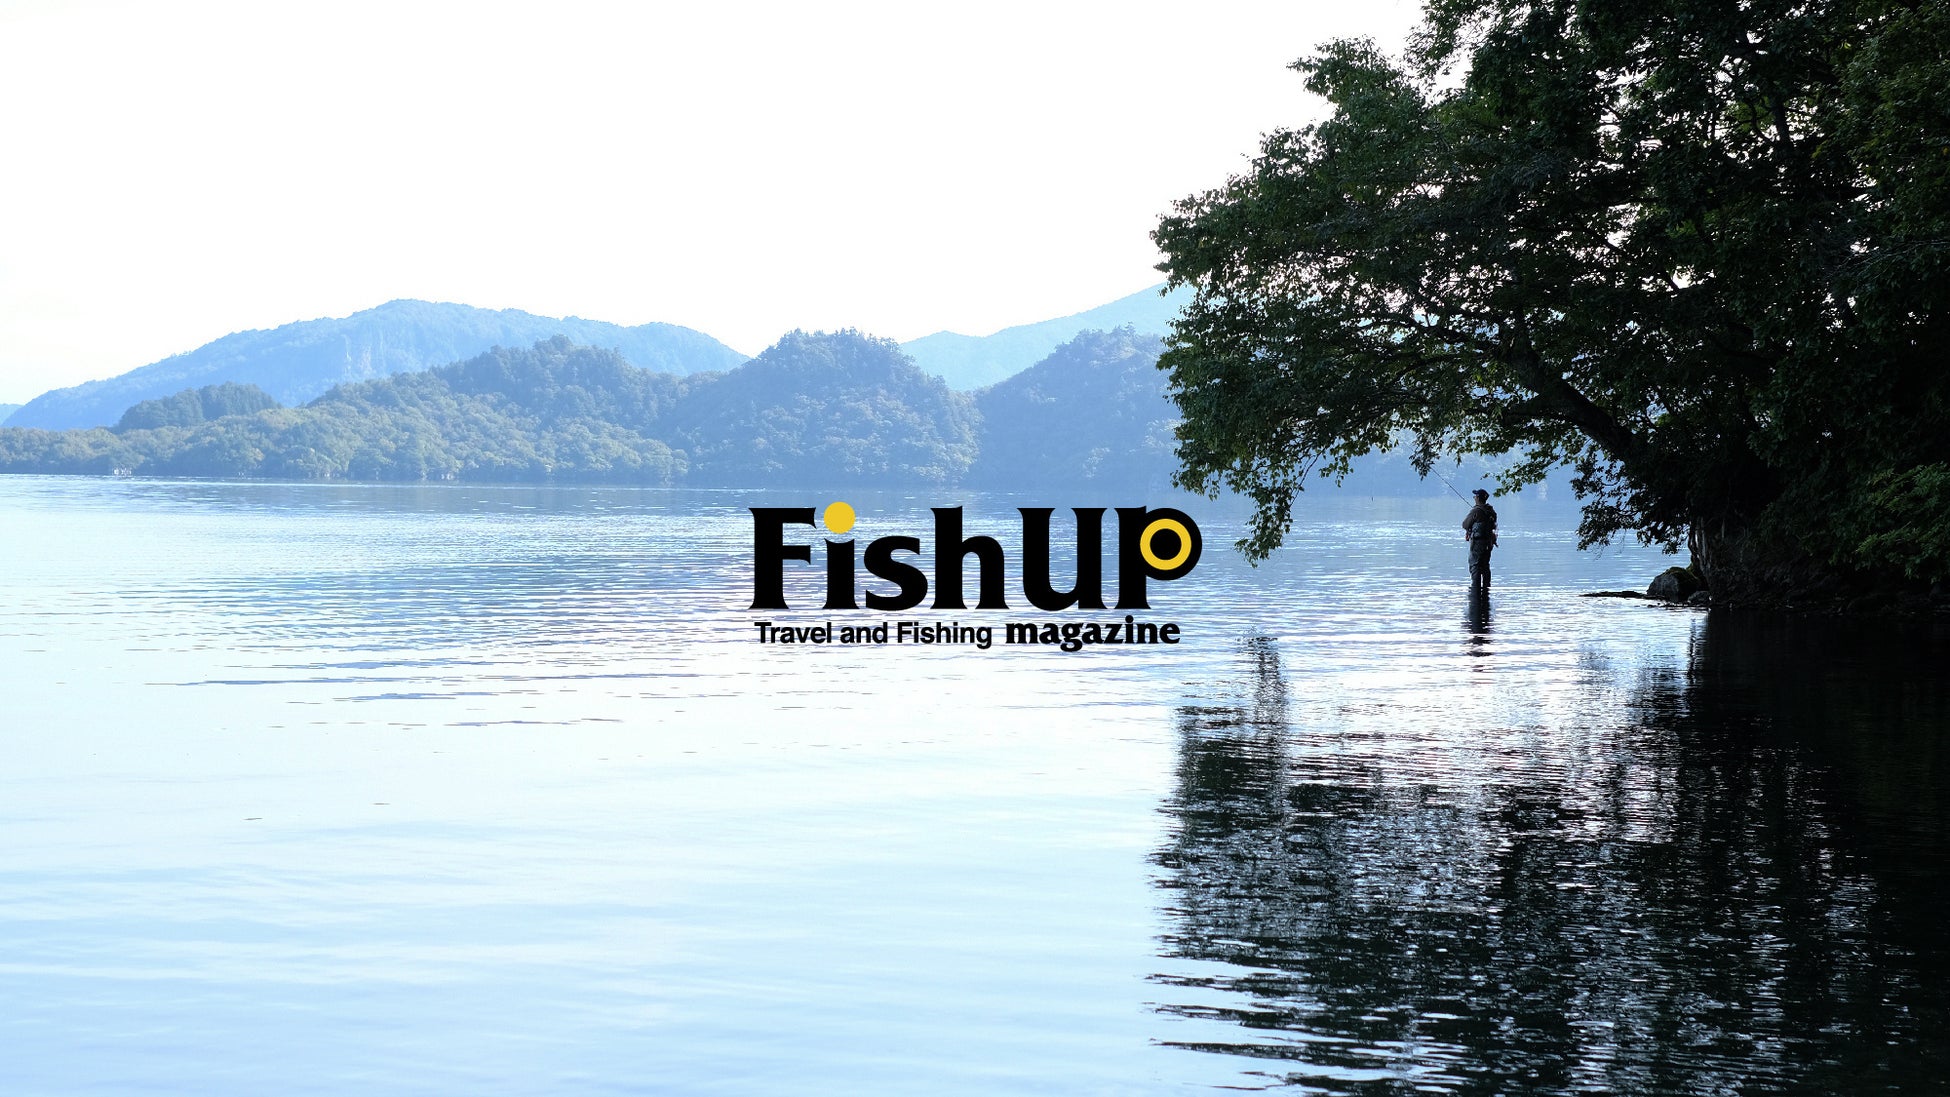 2024年4月、アウトドアの流れから新しい盛り上がりを見せる釣りカルチャーを、旅という視点から紐解くニューメディア「FISHUP Travel and Fishing Magazine」が始動します。